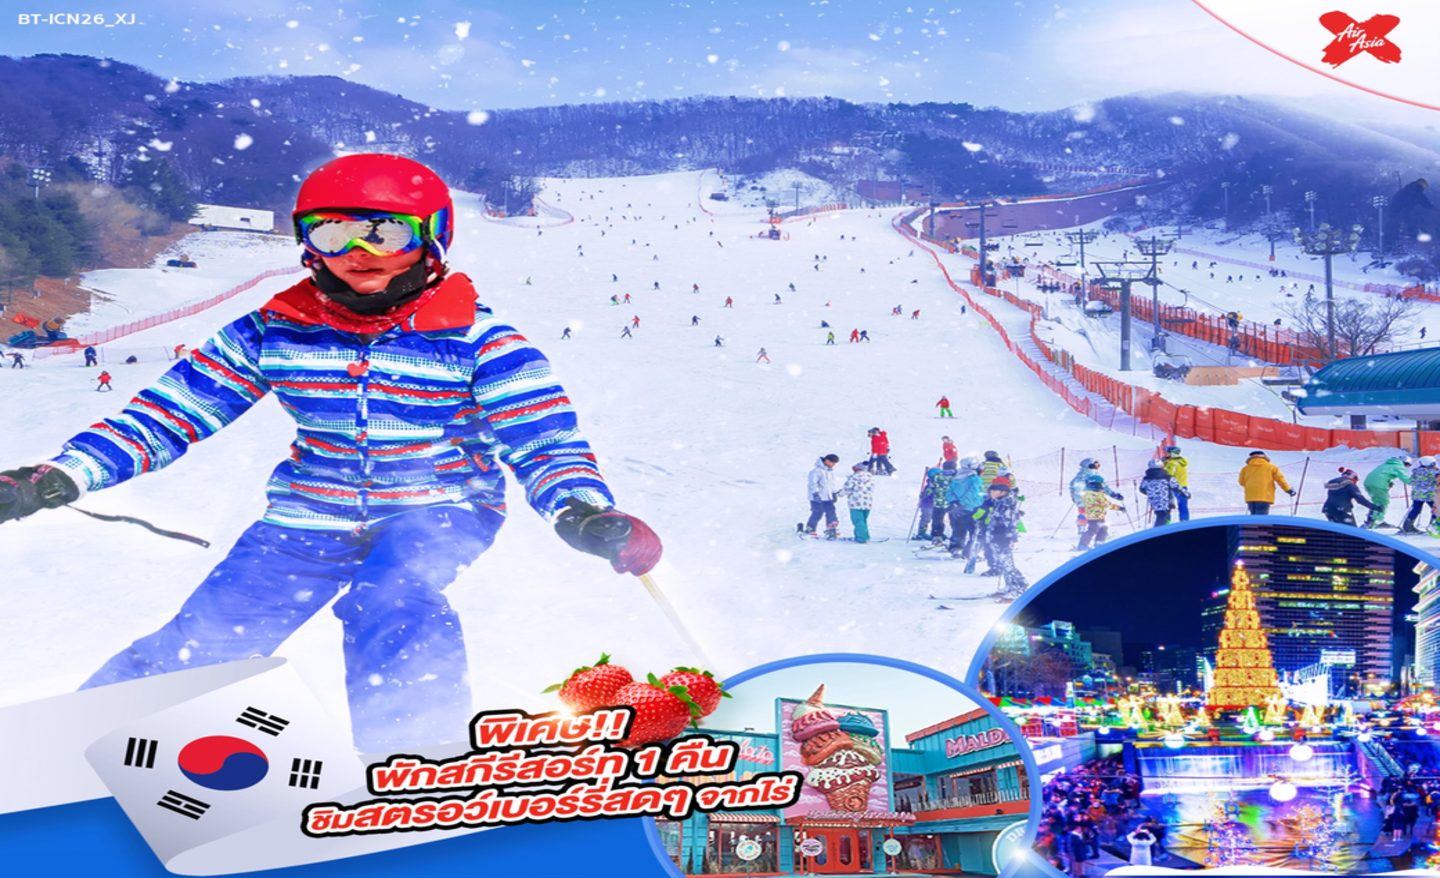 ทัวร์เกาหลี มหัศจรรย์ Korea Ski Winter พักสกีรีสอร์ท (ธ.ค.65)